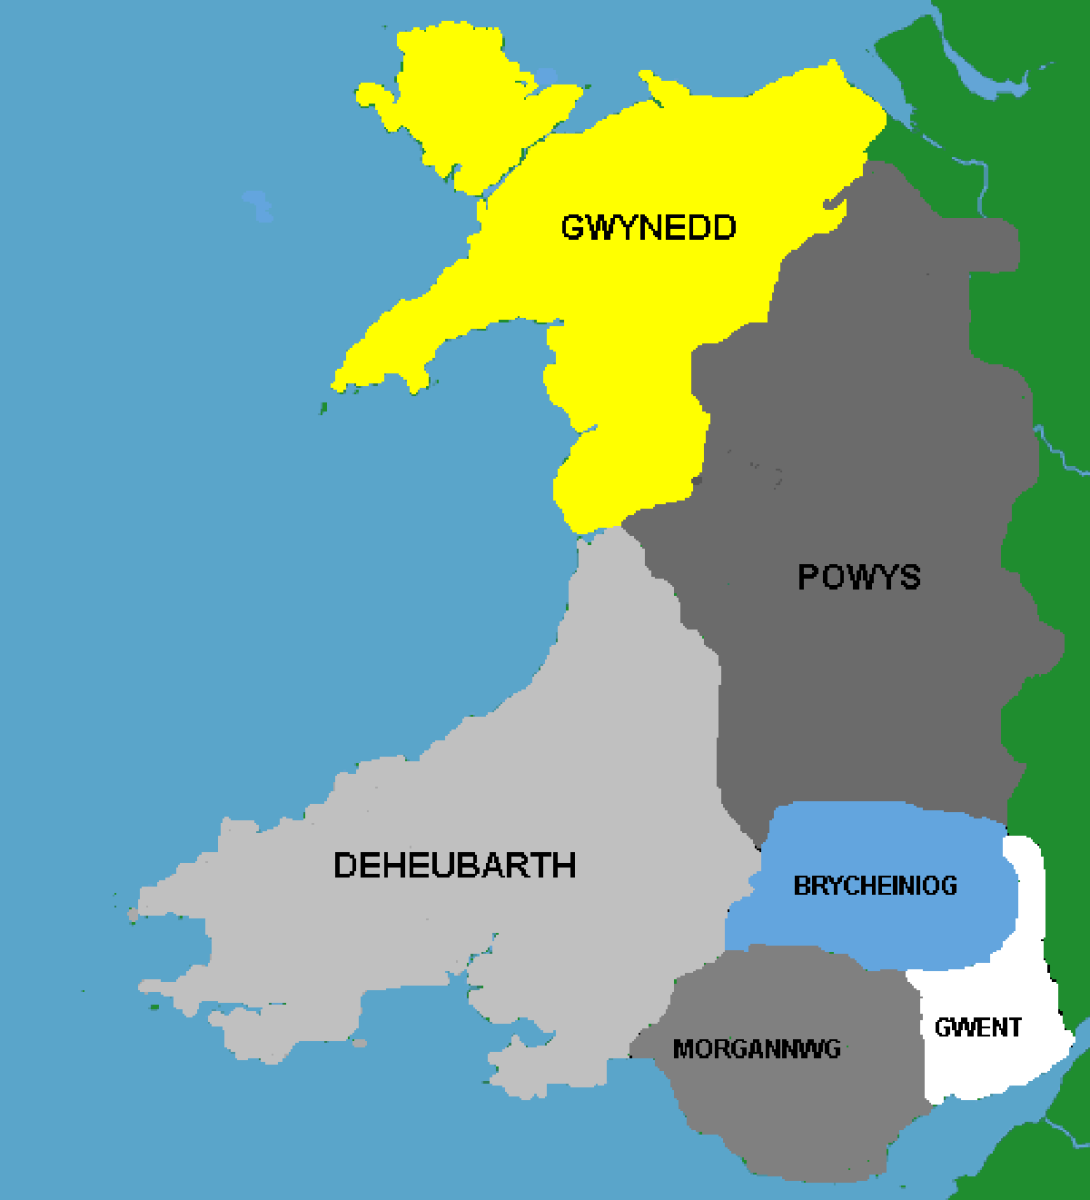 Medieval Wales. Llywelyn the Great was Prince of Gwynedd. 